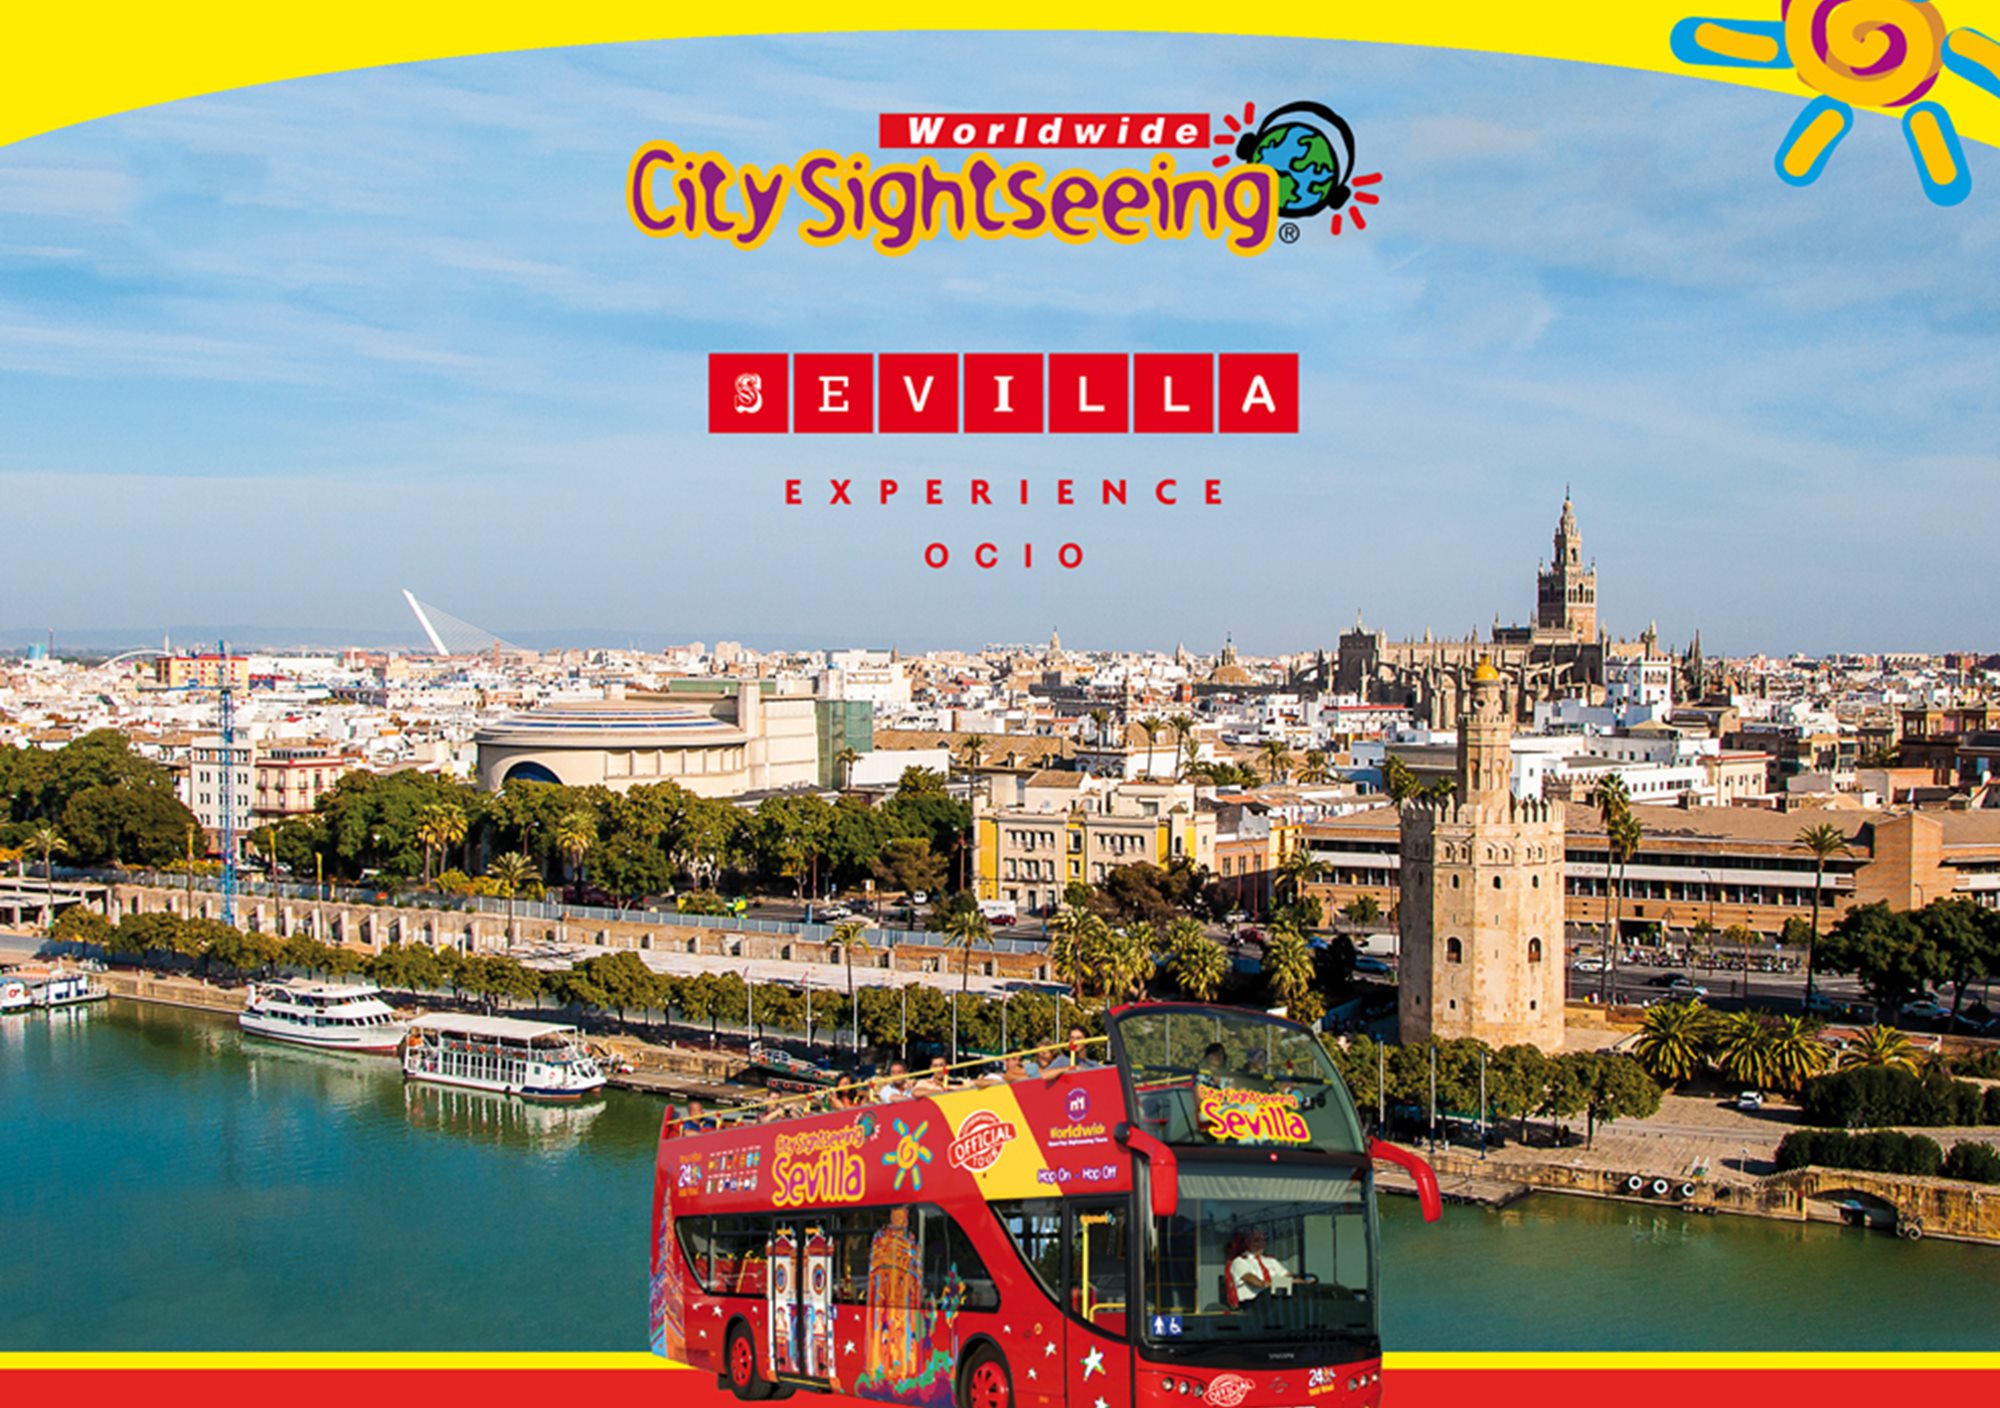 reservieren kaufen buchung tickets besucht Touren Fahrkarte karte karten Eintrittskarten card City Pass Sightseeing Sevilla Experience